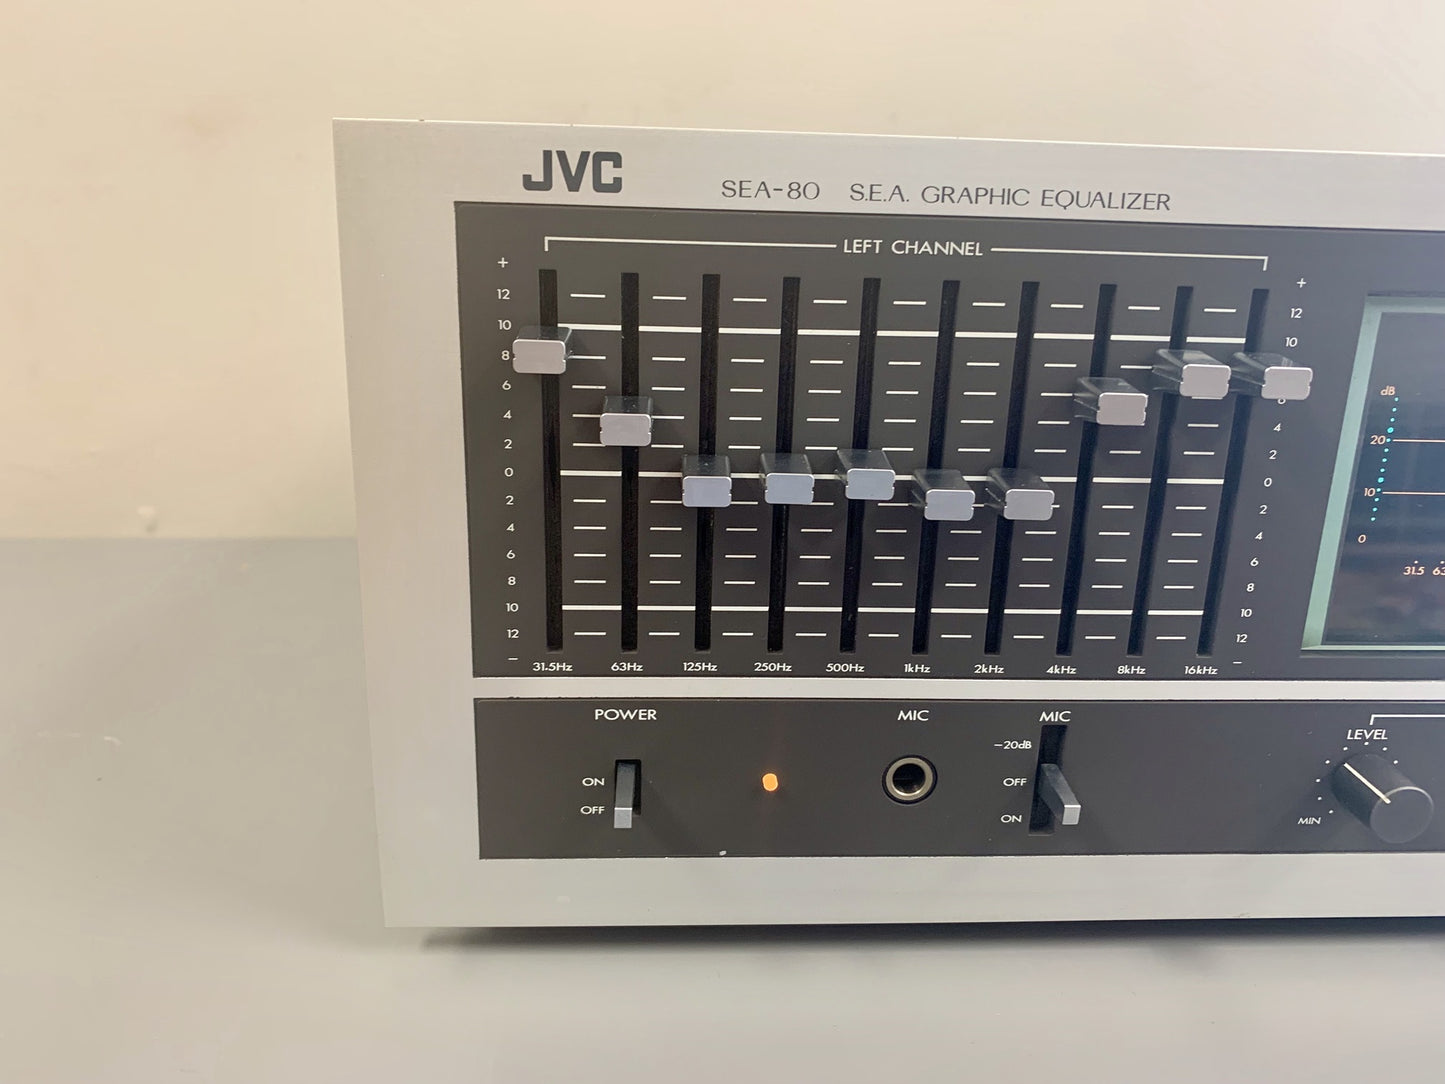 JVC EQ SEA-80 Graphic Equalizer with Spectrum Analyzer